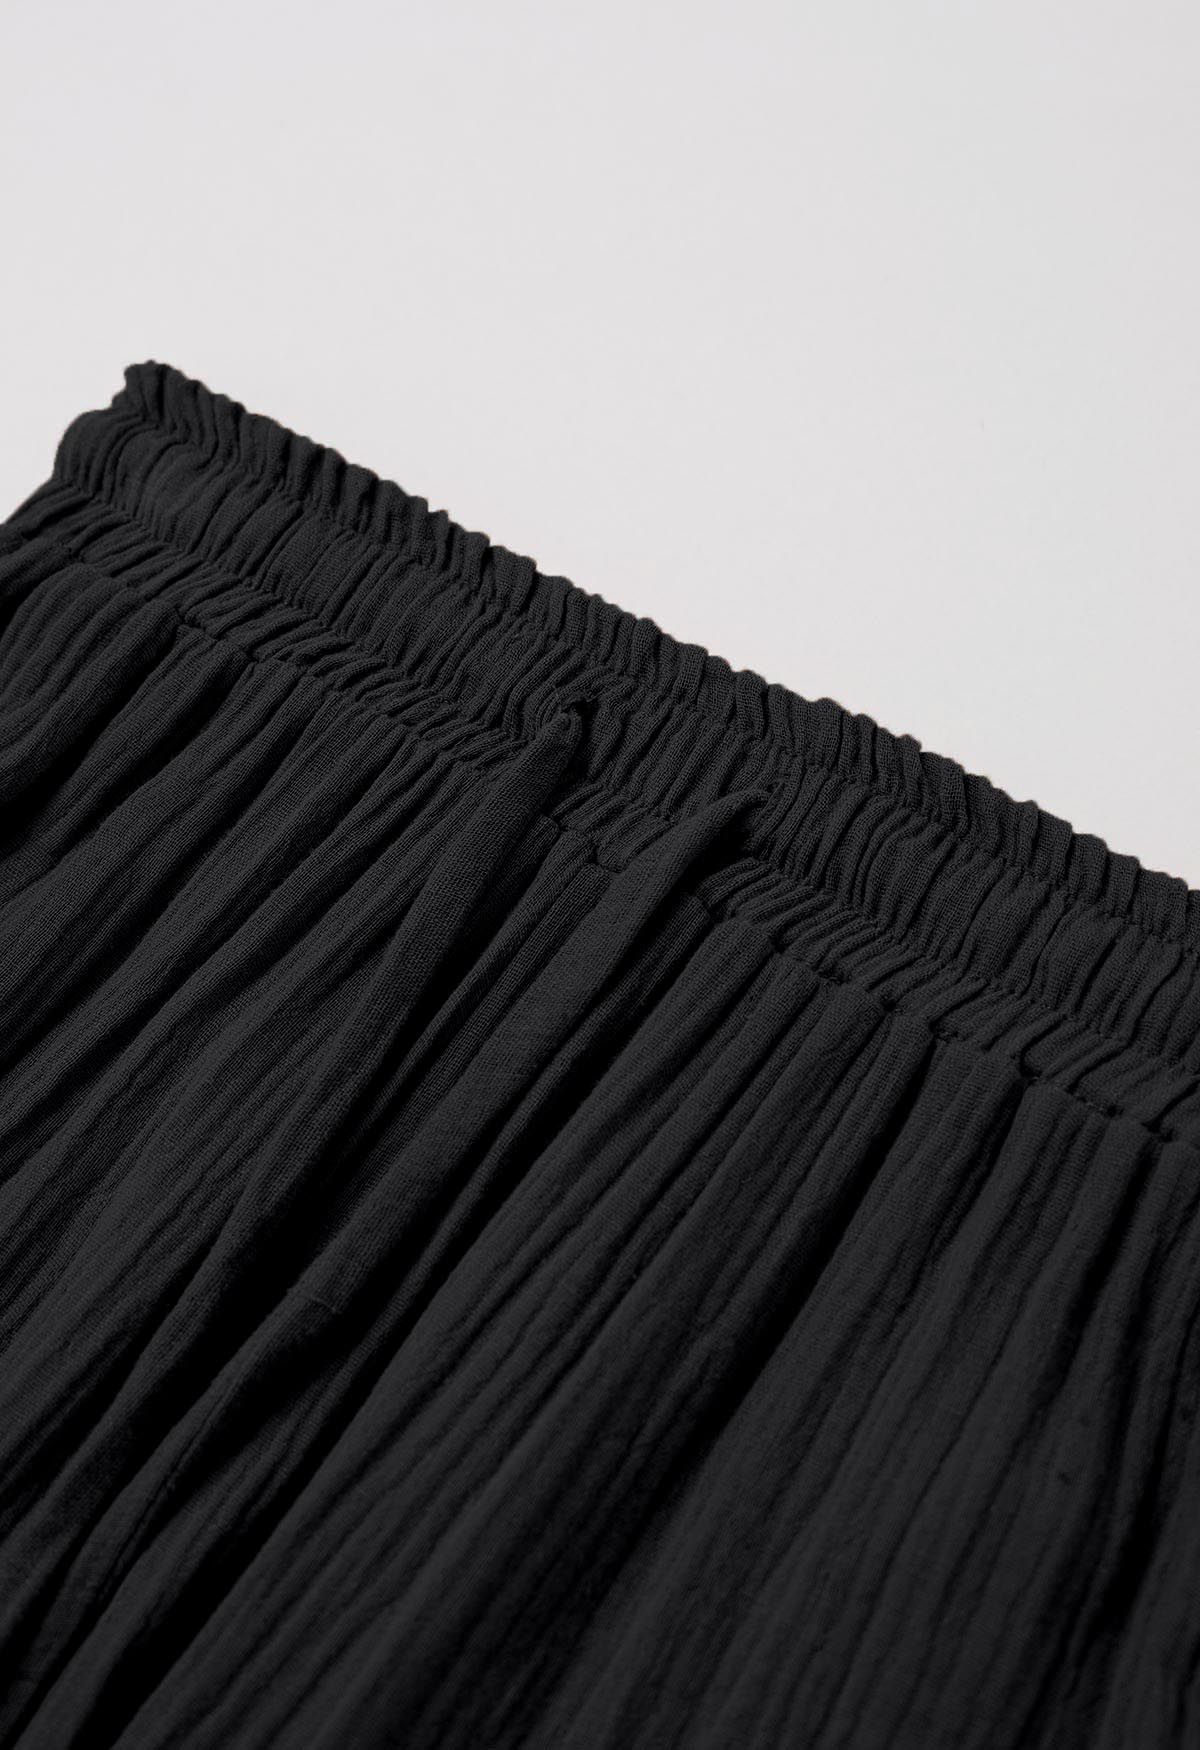 Pantalon léger à cordon de serrage en coton noir